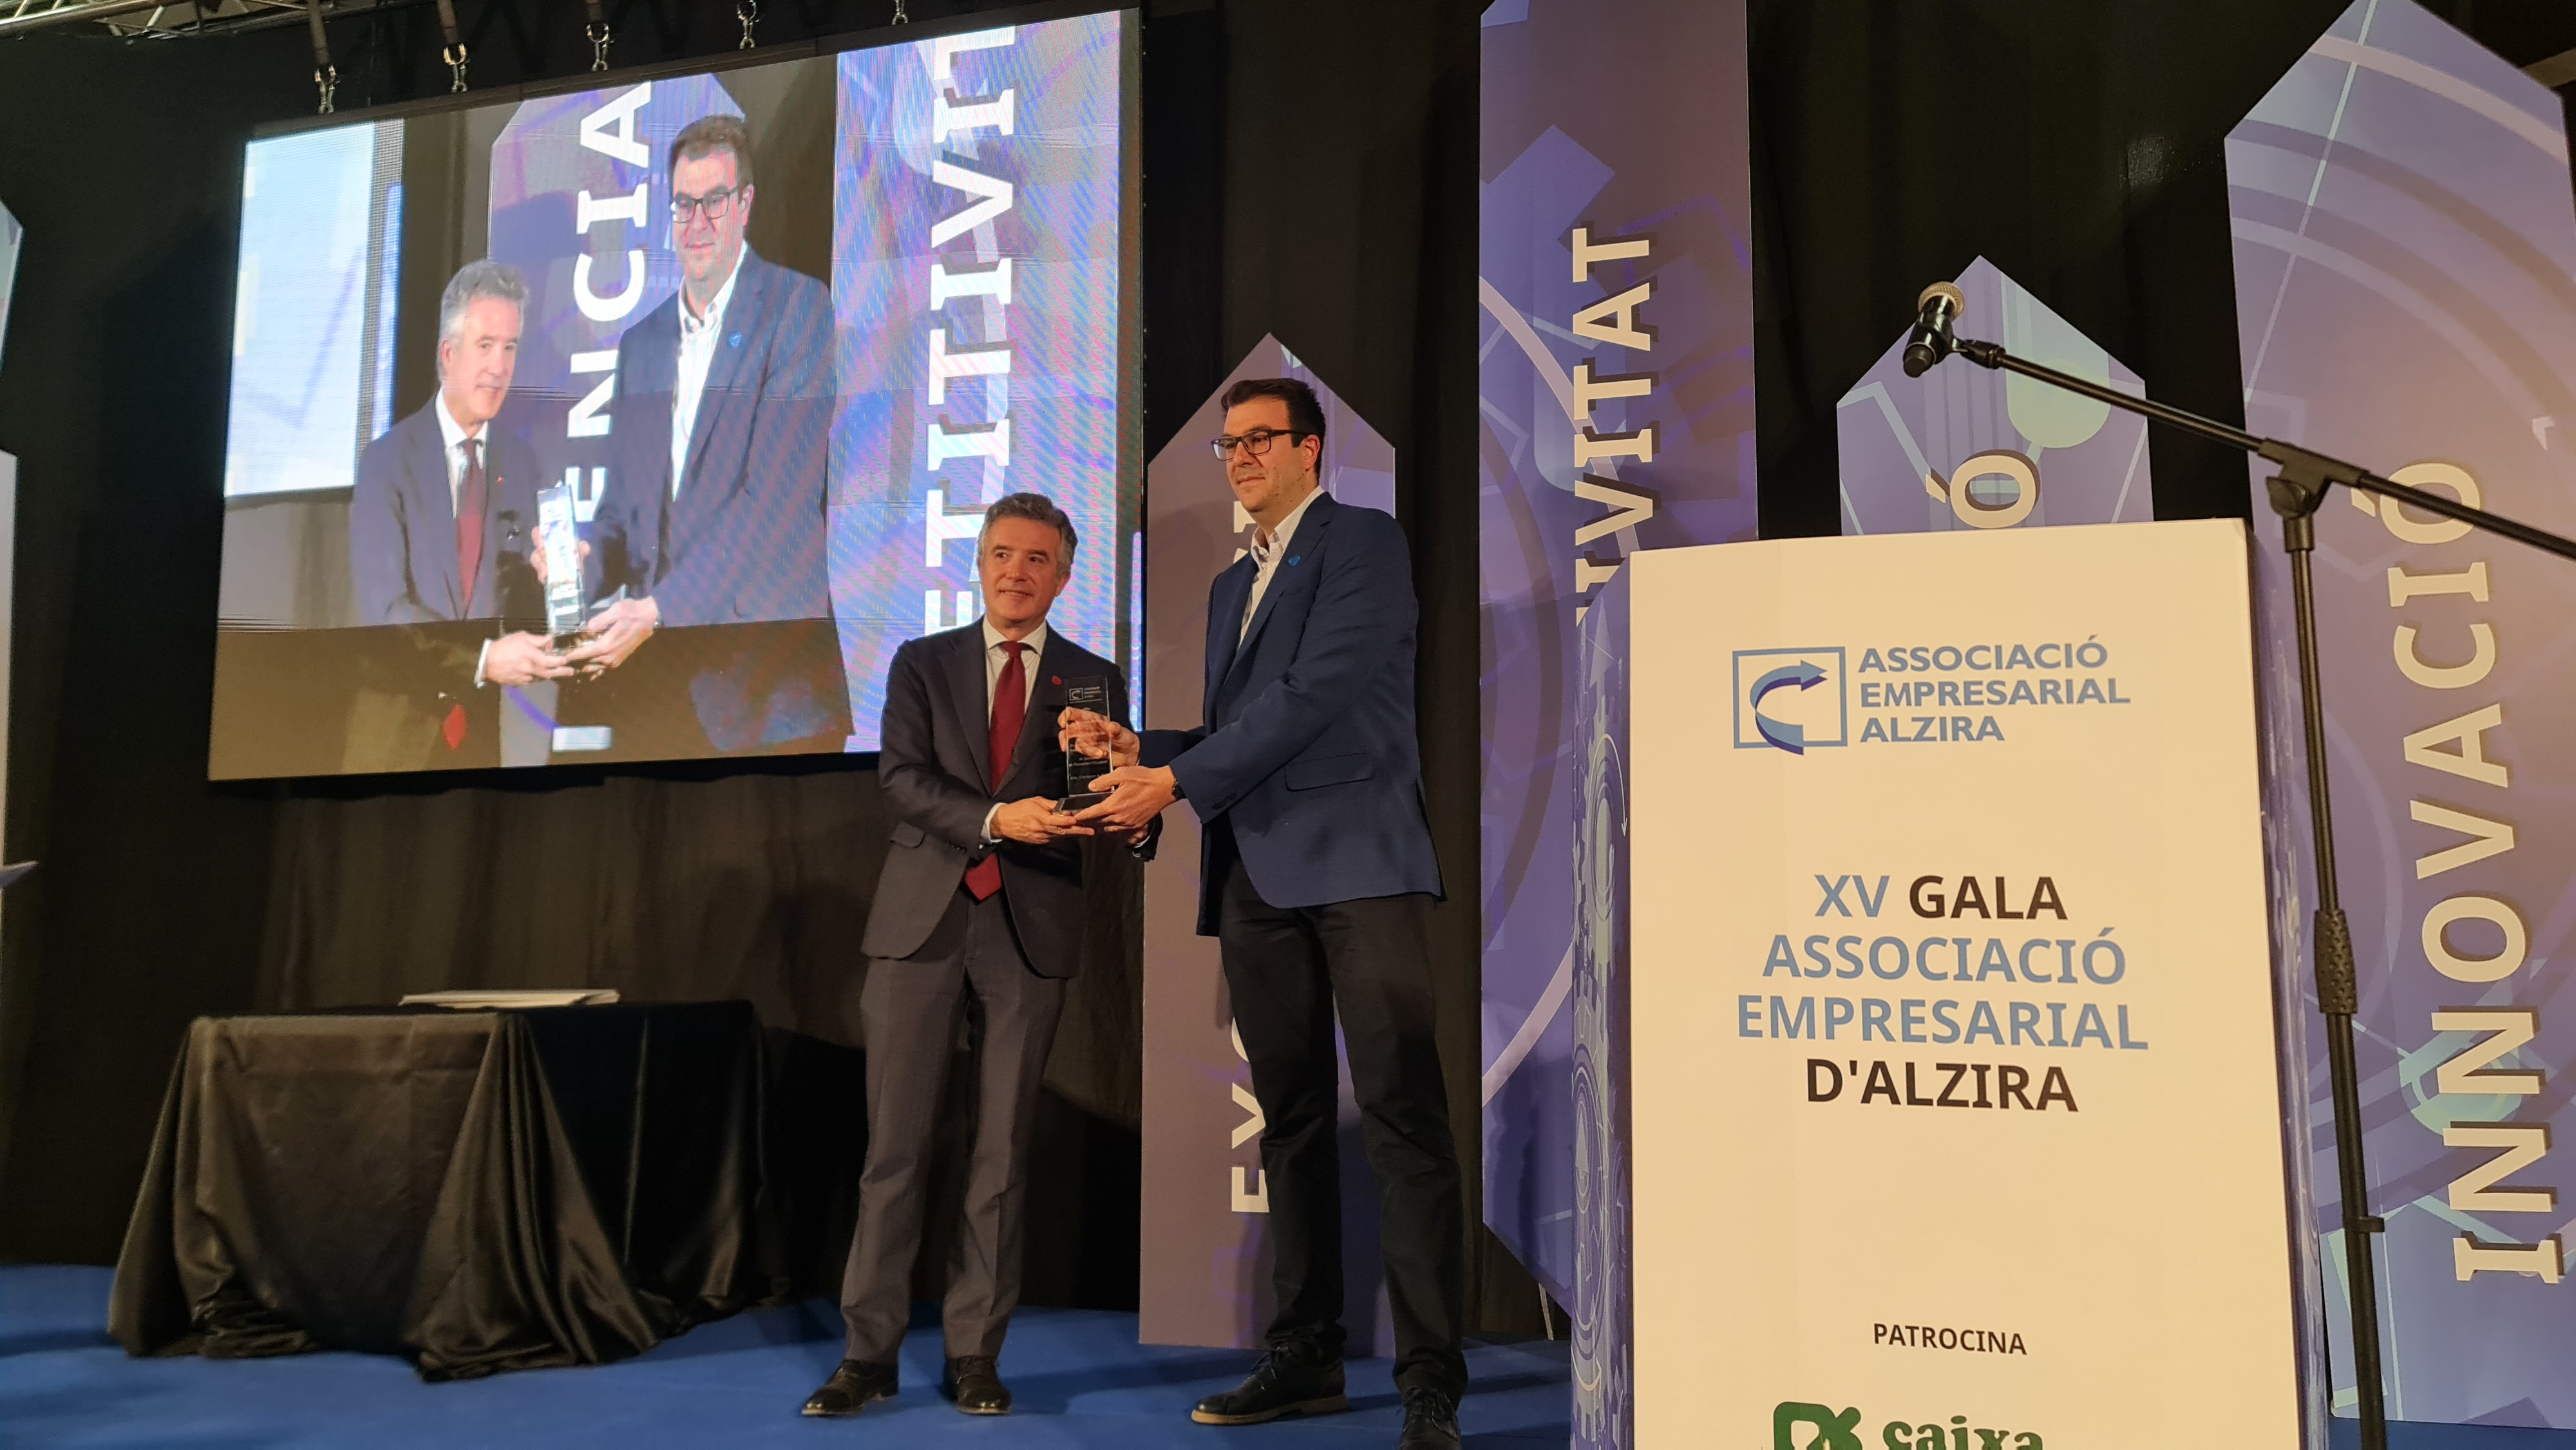 La Asociación Empresarial de Alzira premia los 15 años de trayectoria empresarial de Affidea Clínica Tecma 